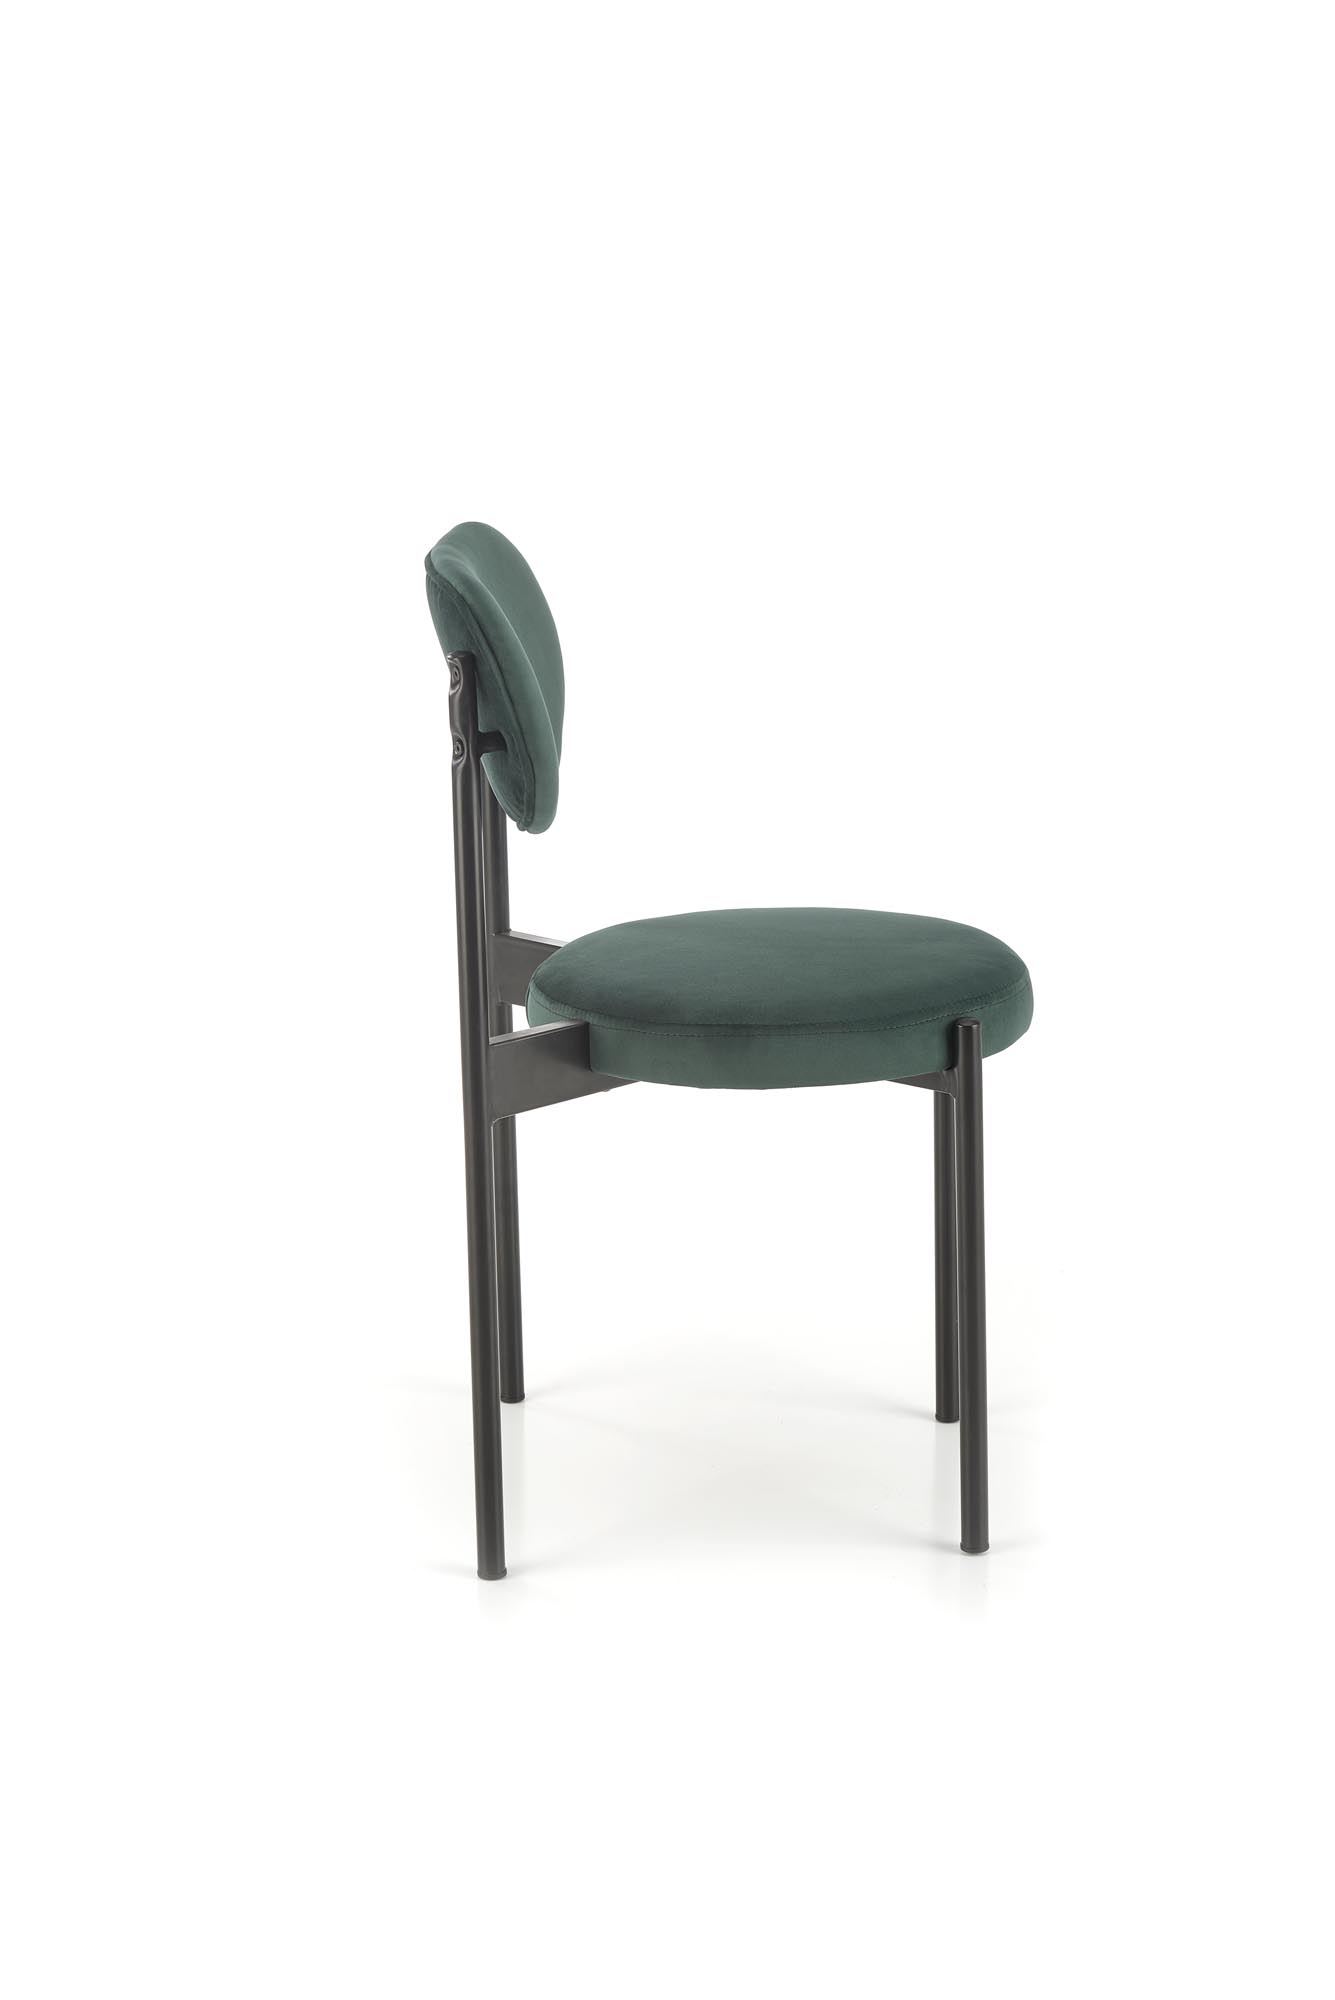 K509 Židle tmavý Zelený židle čalouněné k509 - tmavá Zeleň